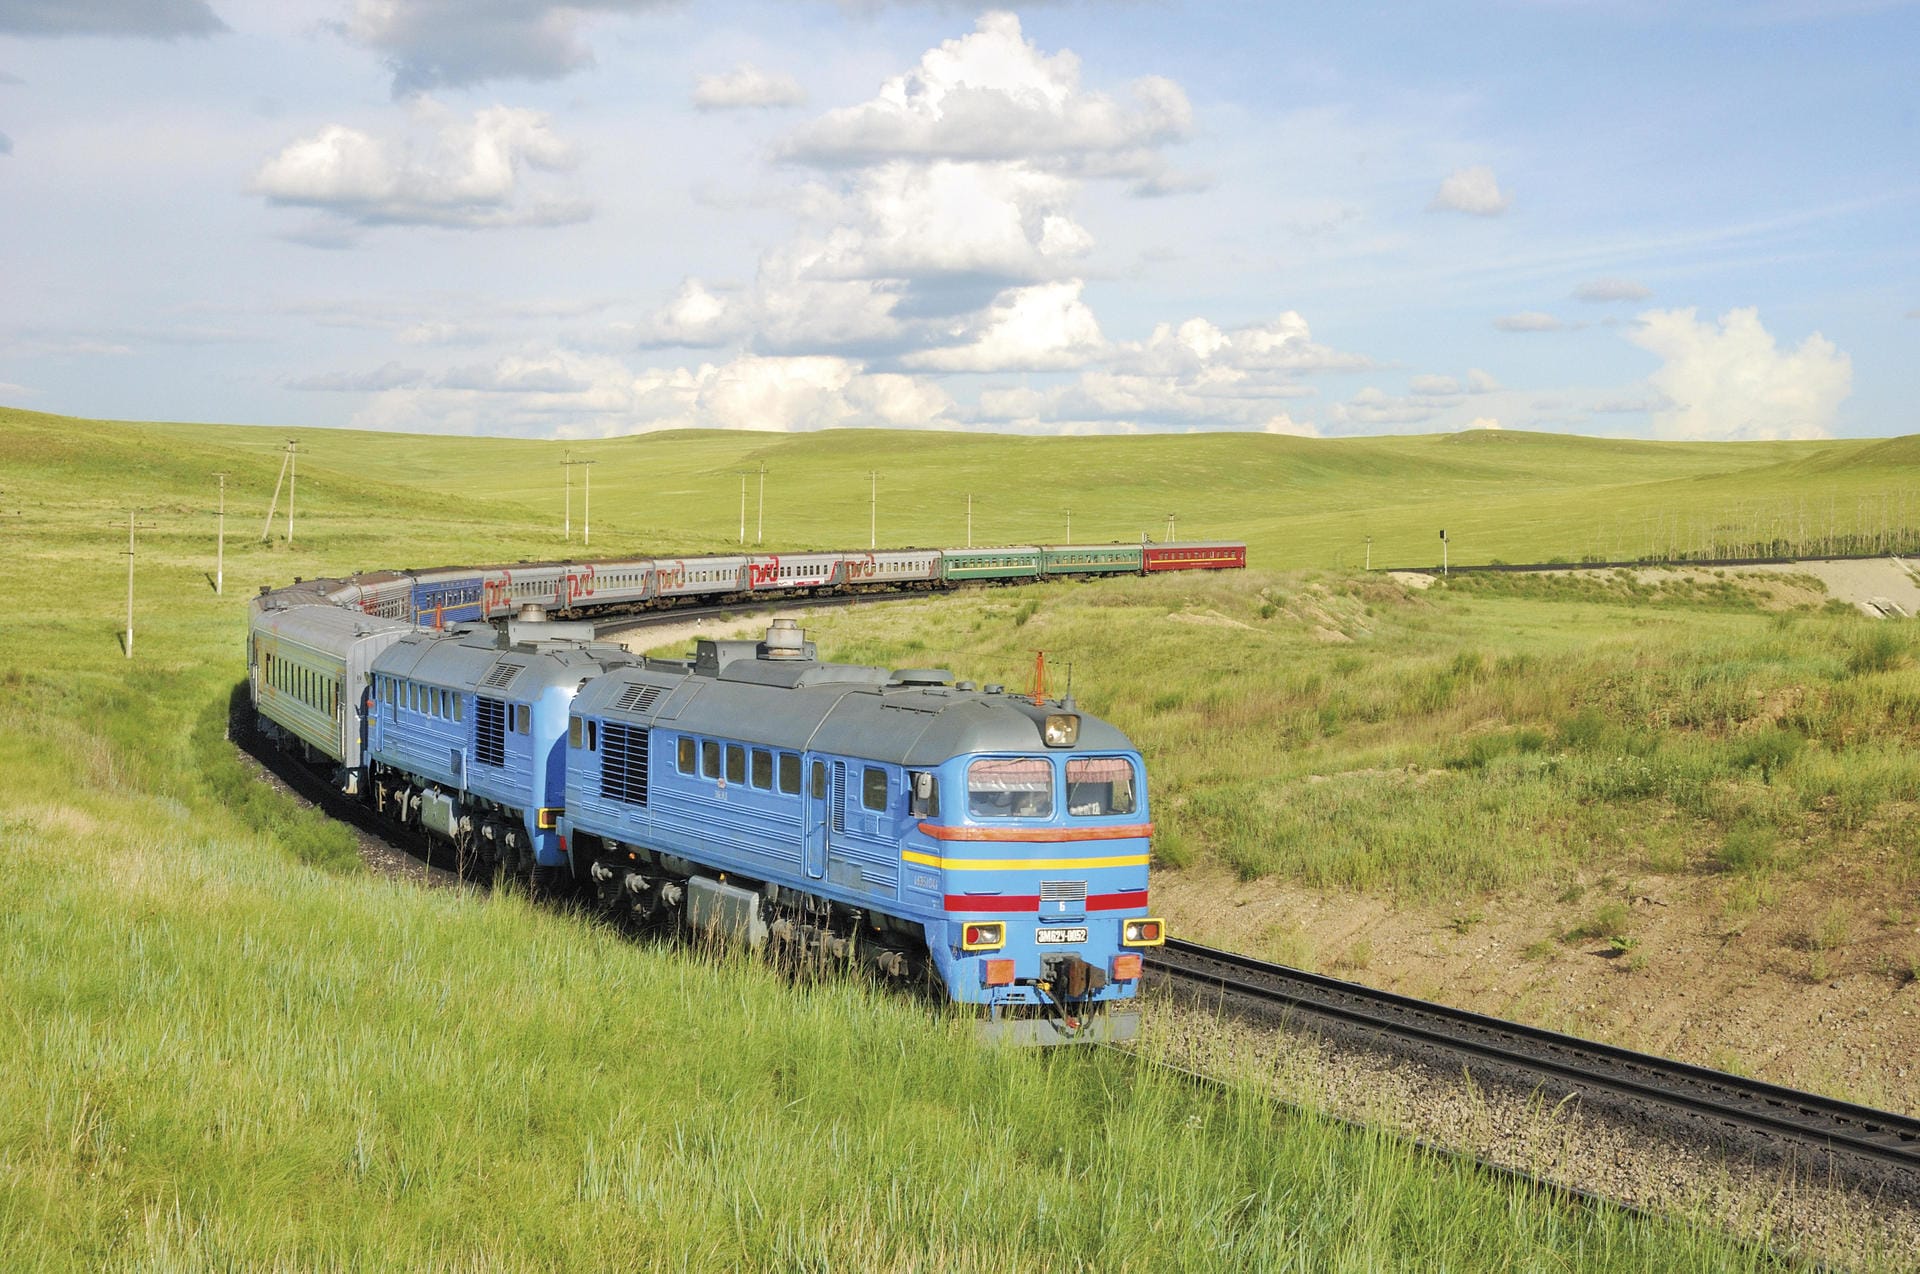 Auf der Transsib-Strecke fahren verschiedene Züge. Der Zarengold-Express gehört zur Luxus-Variante und ist eher eine "Kreuzfahrt auf Schienen".